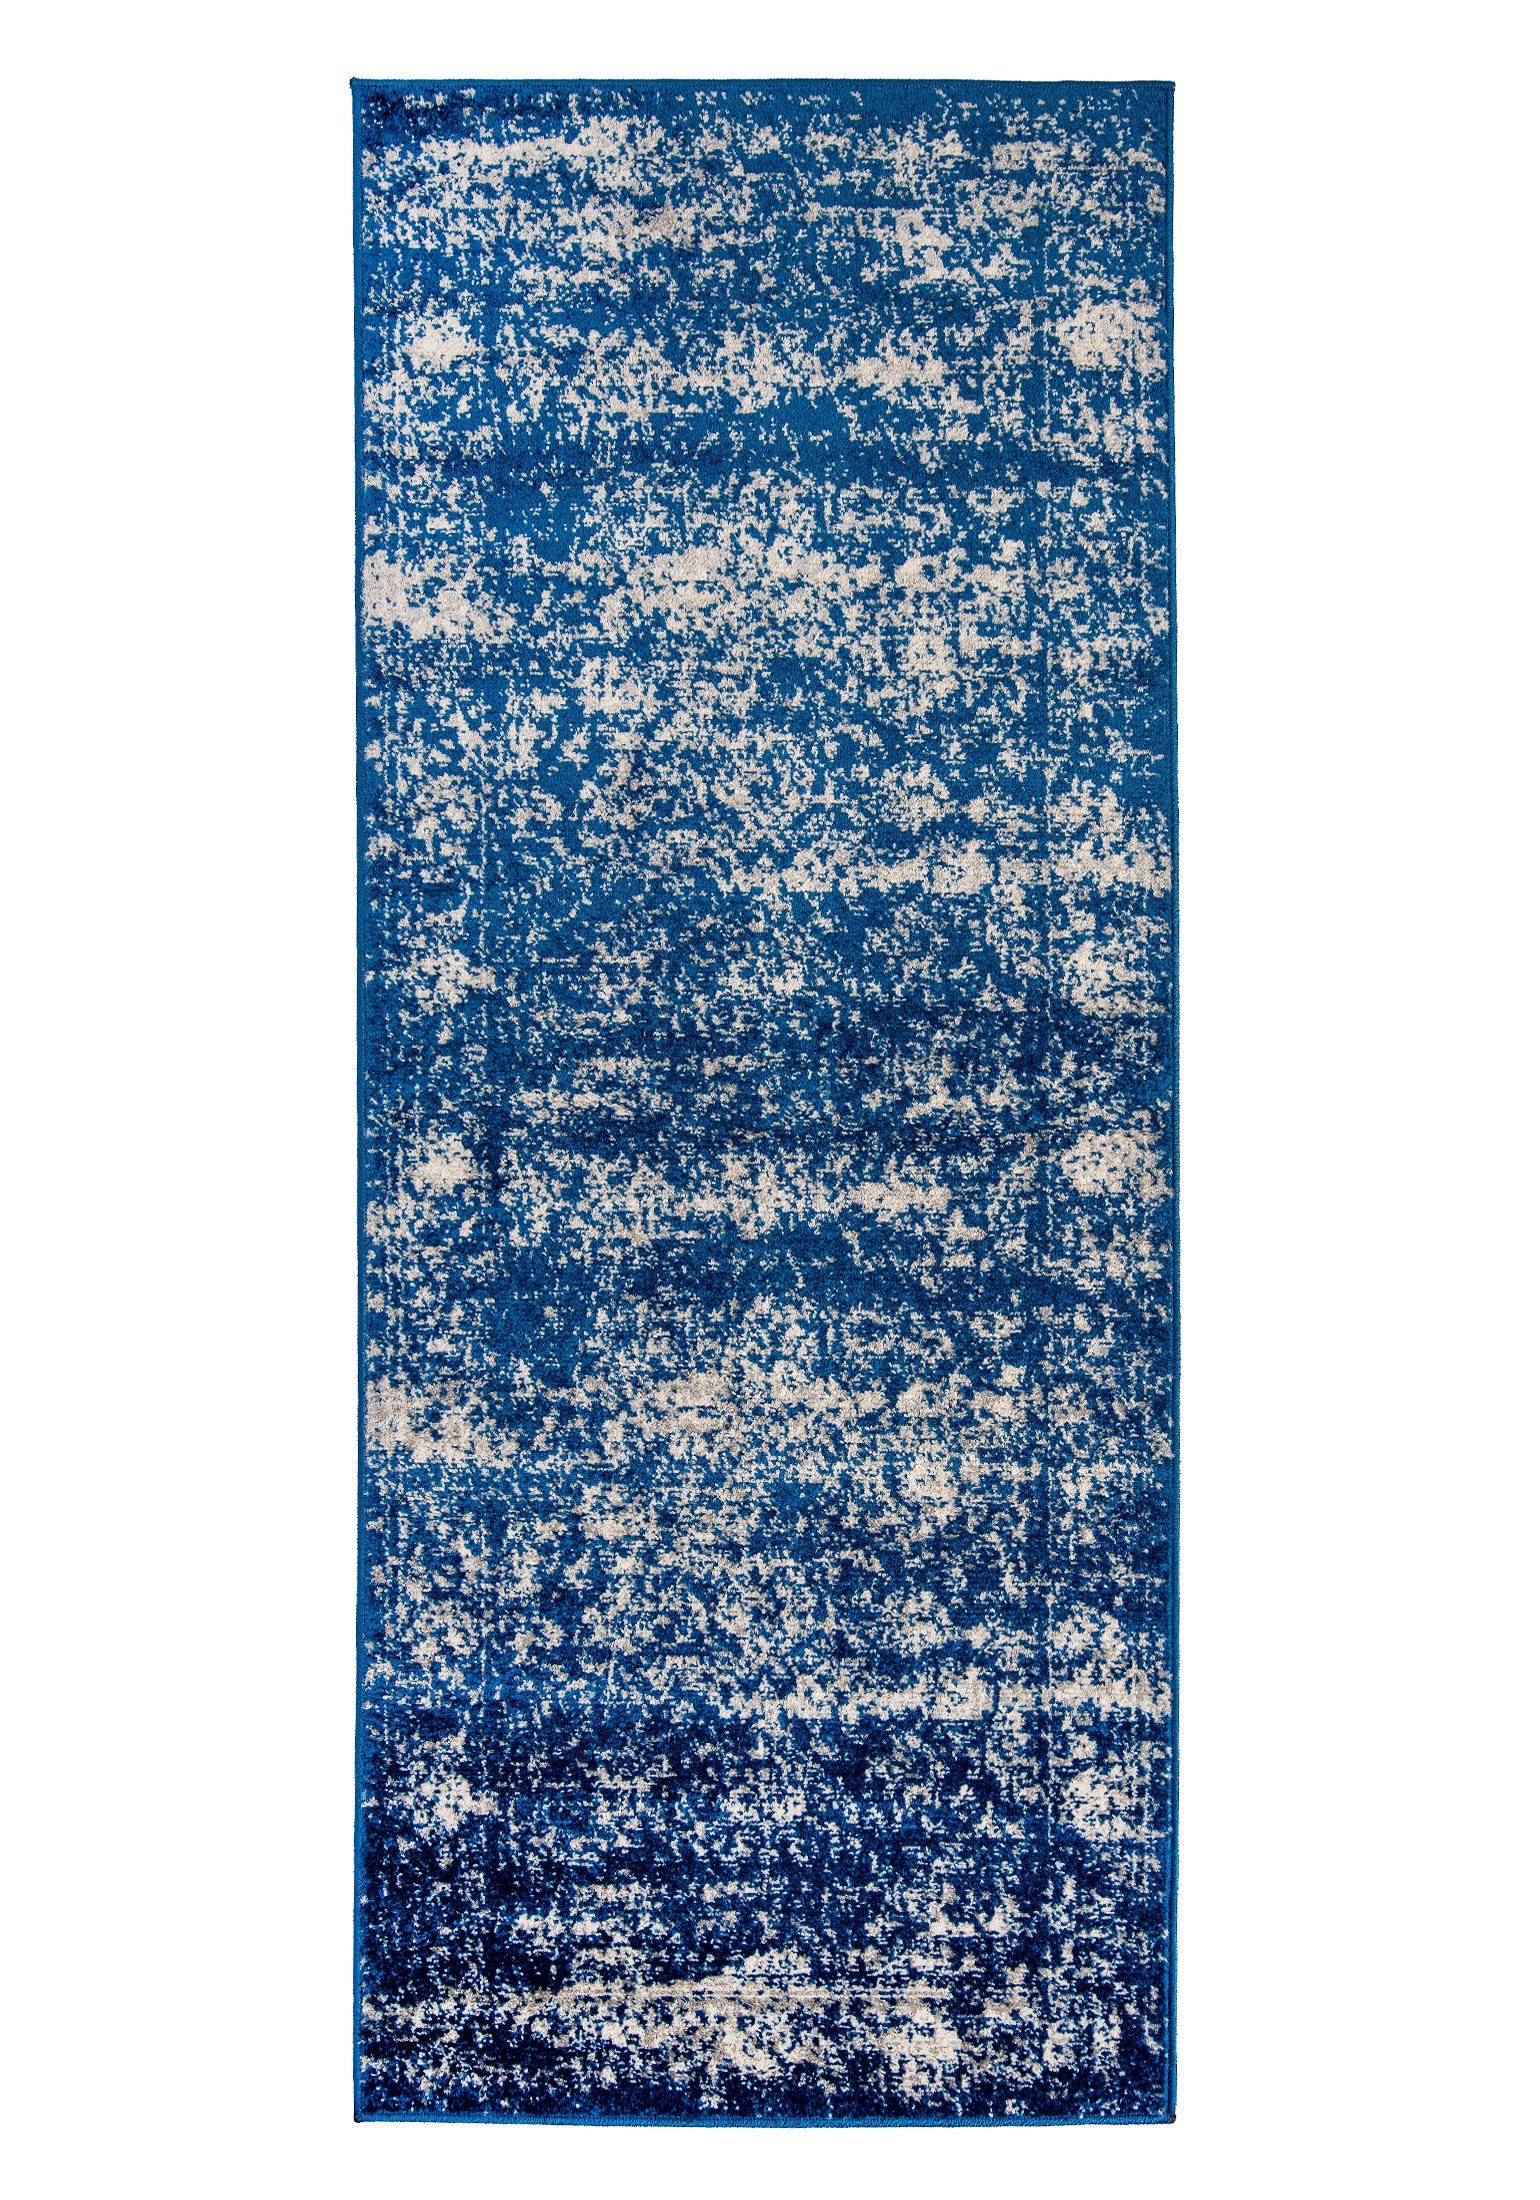 Designteppich Vintage Teppich für Wohnzimmer - Vintage Look - Blau, Mazovia, 60 x 200 cm, Vintage, Höhe 8 mm, Kurzflor - niedrige Florhöhe Blau / H182A